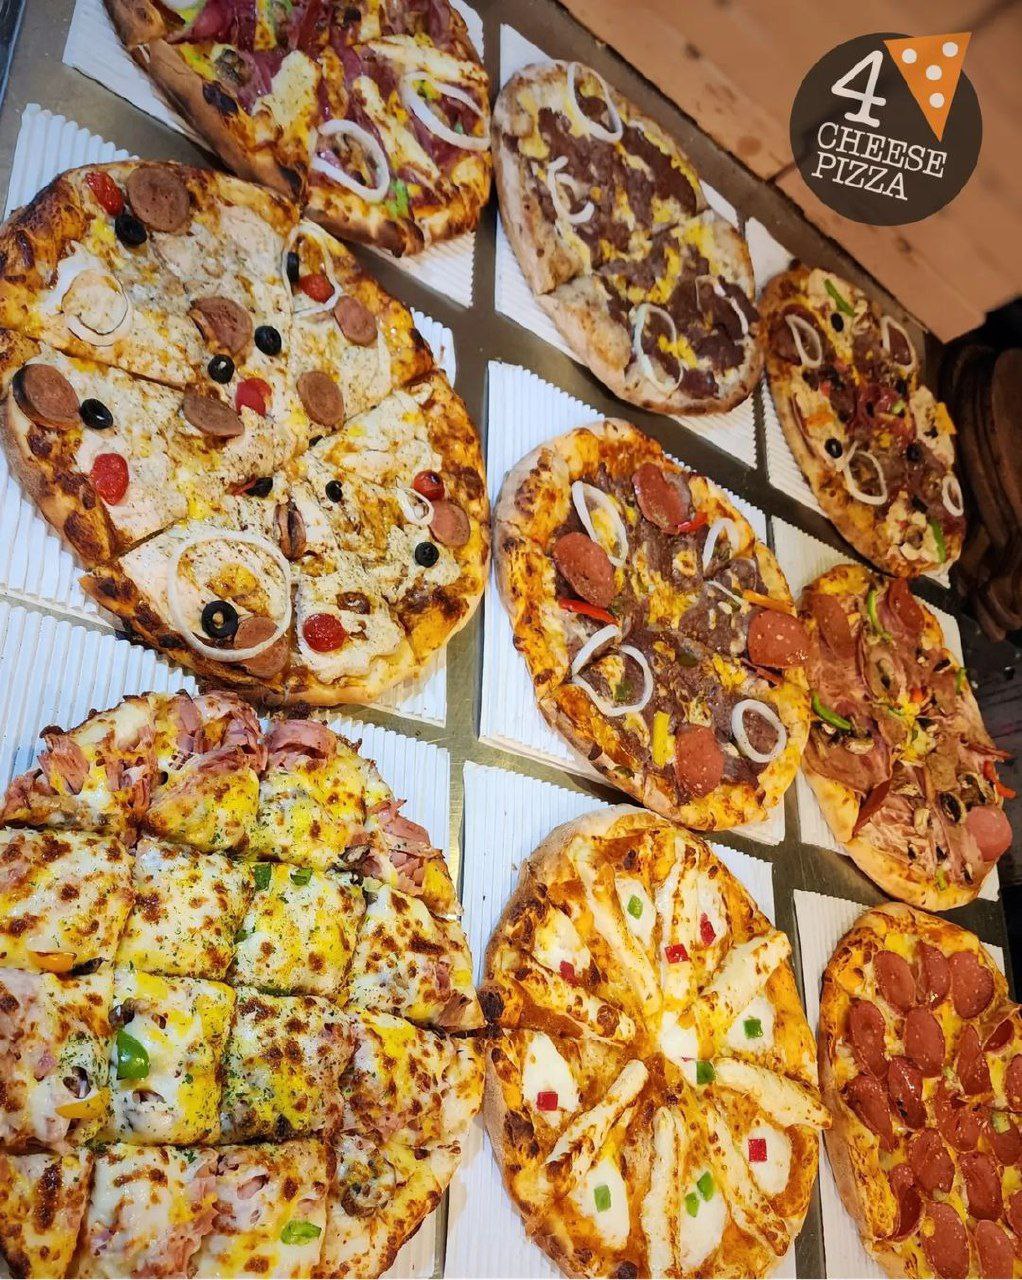 پیتزا چارچیز